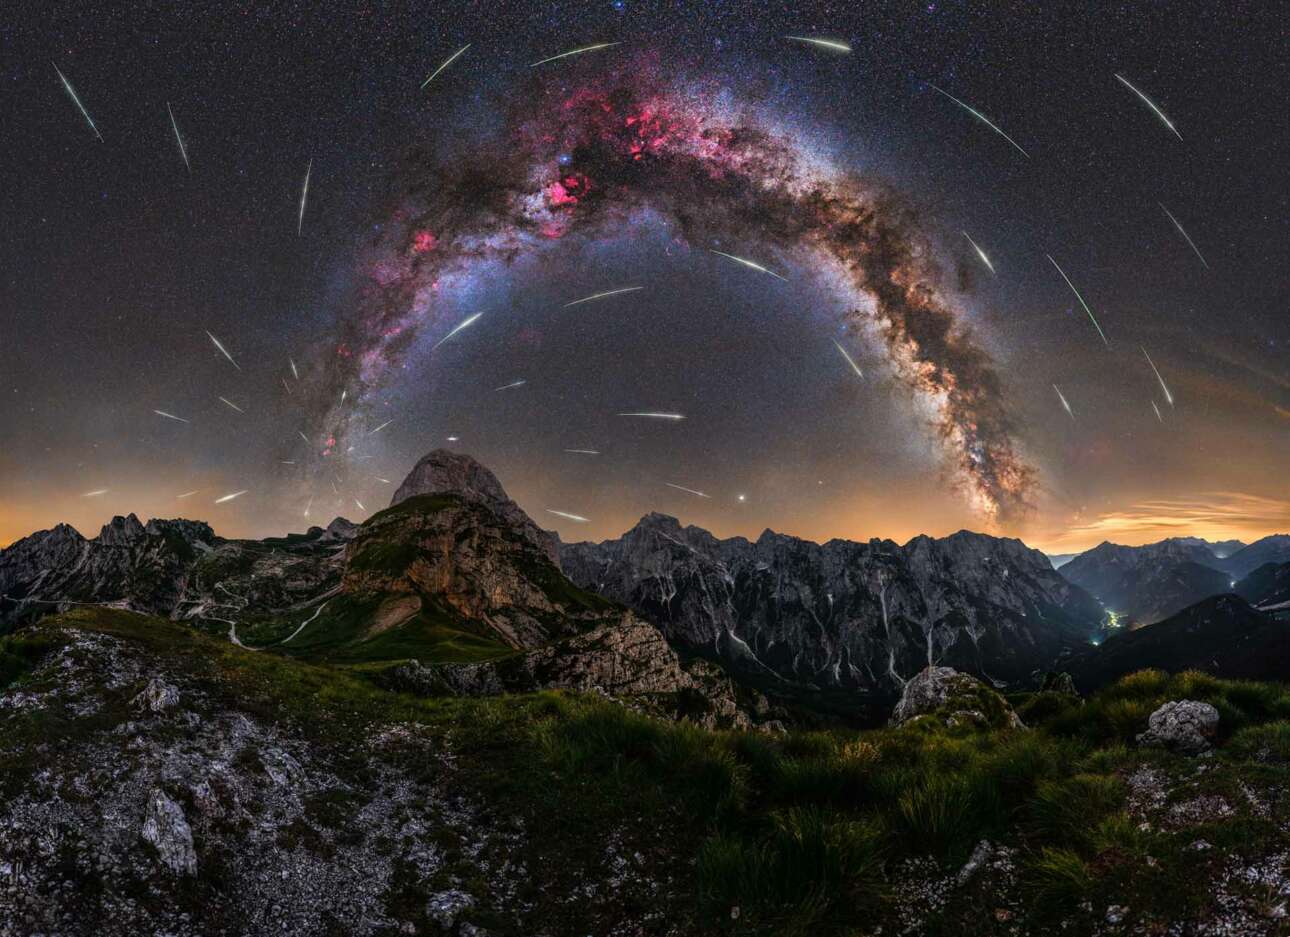 Εντυπωσιακό σκηνικό με τις Περσείδες (βροχή μετεωριτών) να μοιάζουν με πυροτεχνήματα που σκάνε πάνω στην γαλαξιακή δομή στον ουρανό των Ιουλιανών Άλπεων, στη Σλοβενία